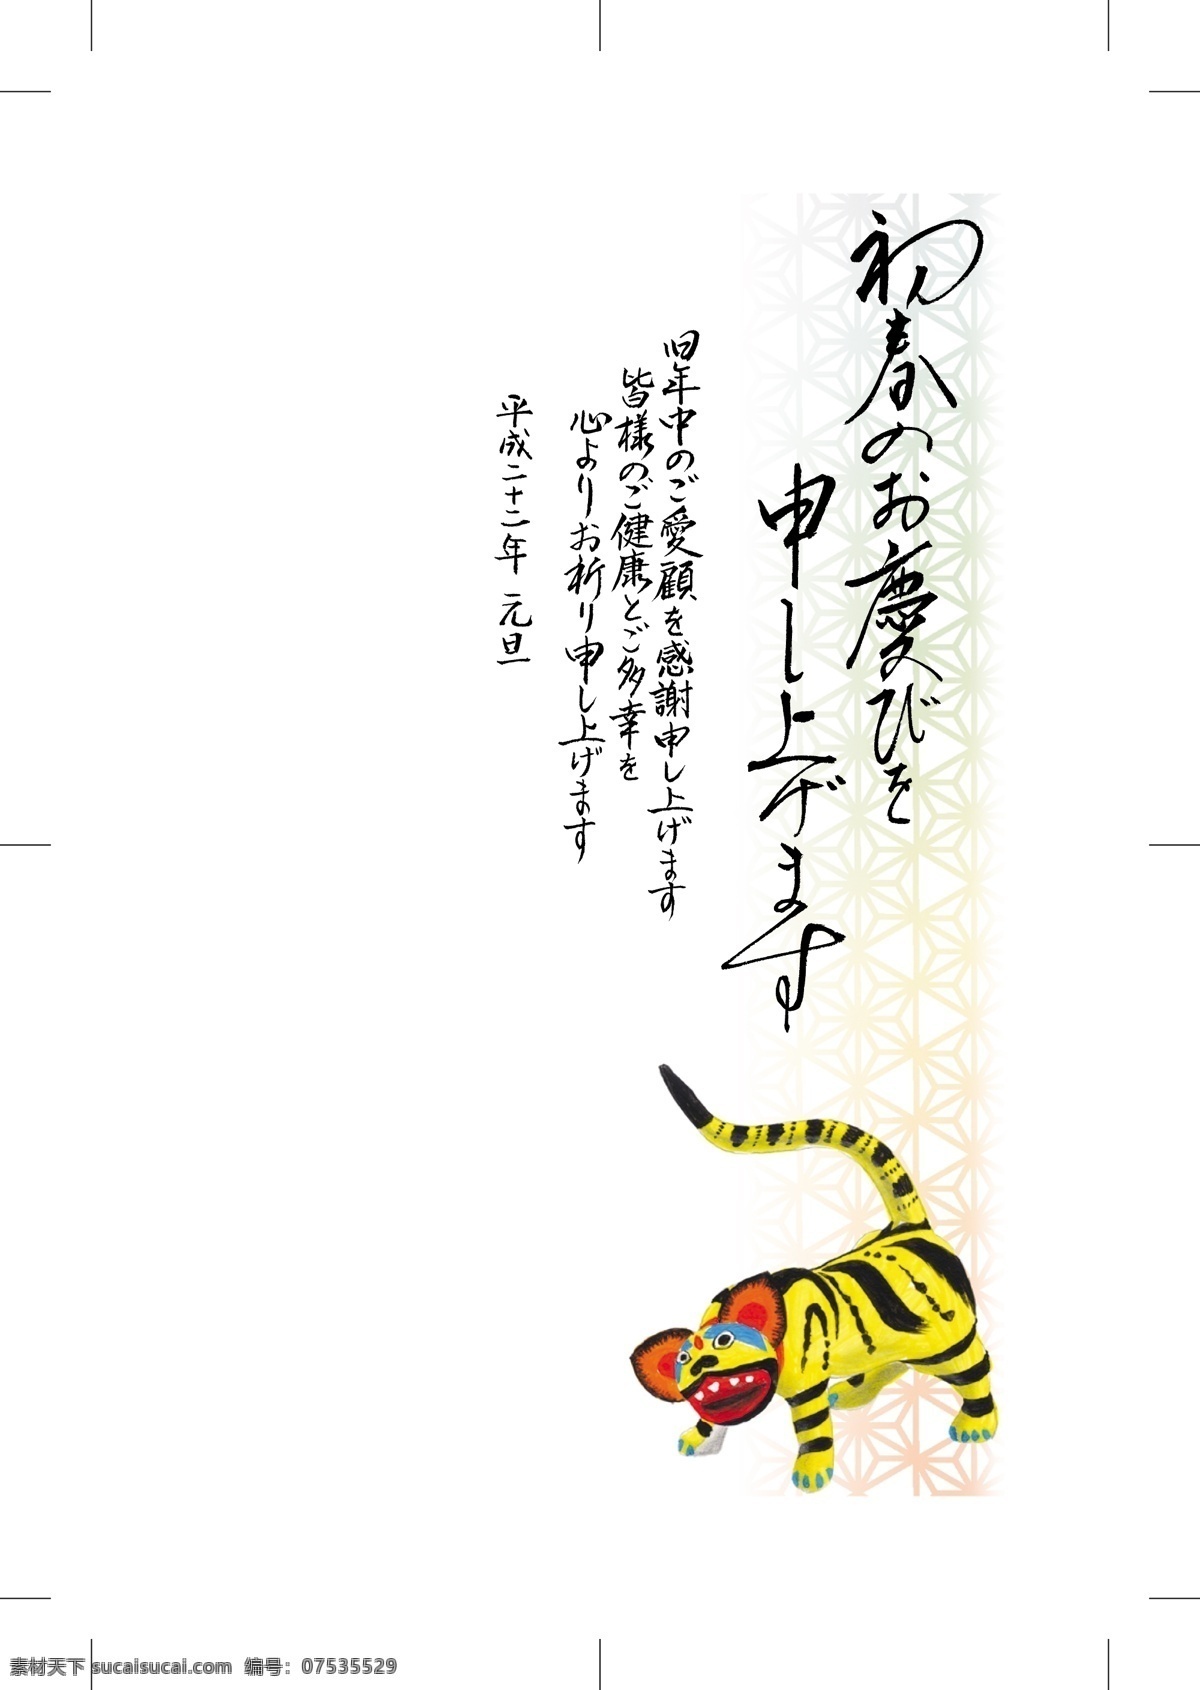 2010 虎年 素材图片 春节 节日素材 毛笔字 日本风格 矢量 其他节日